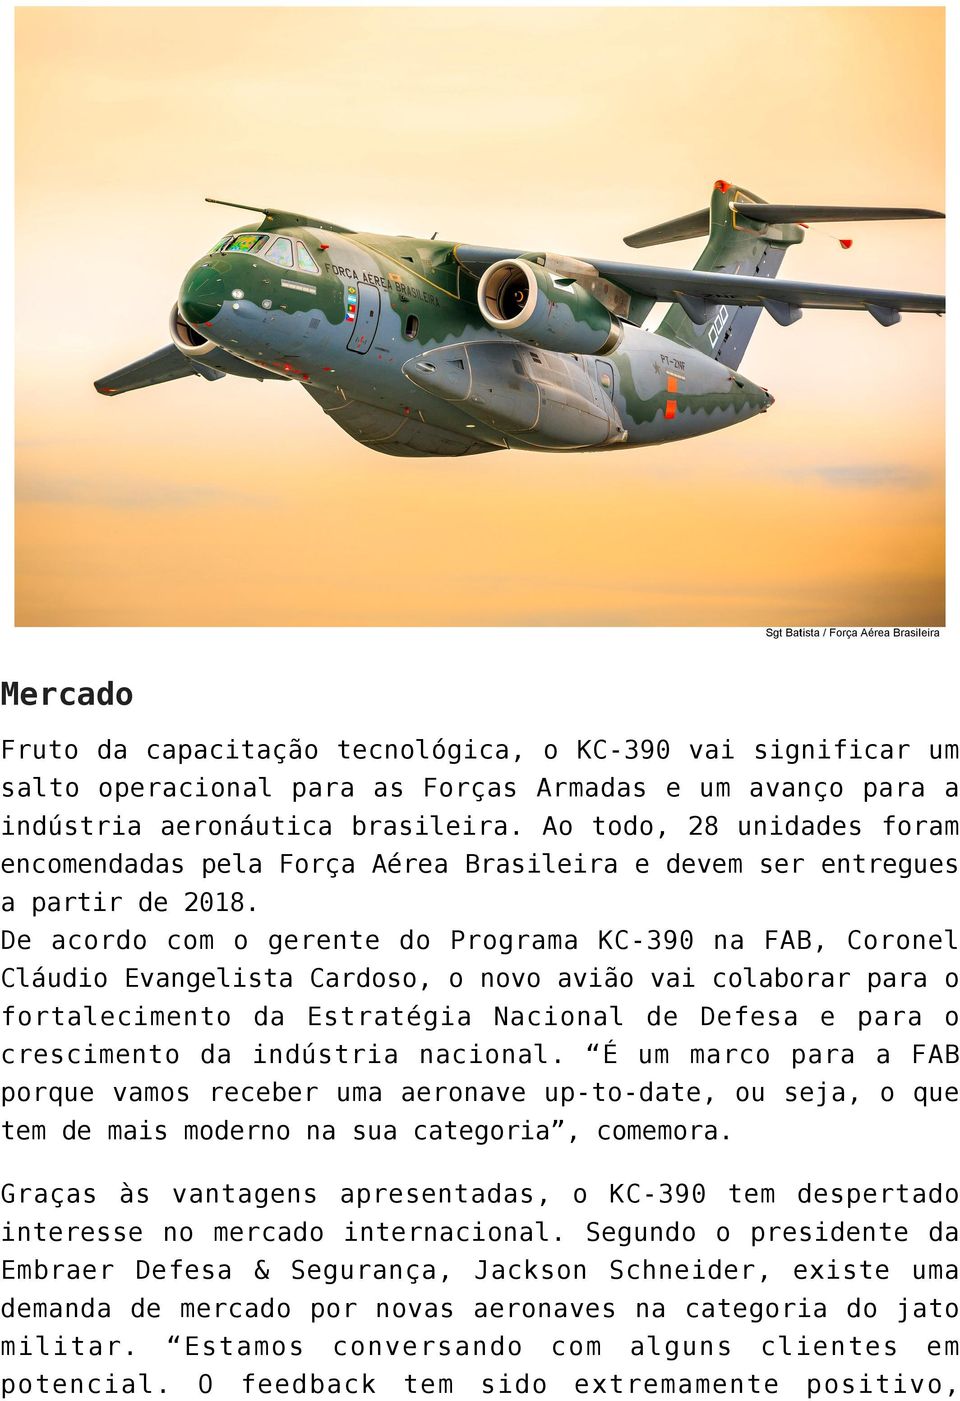 De acordo com o gerente do Programa KC-390 na FAB, Coronel Cláudio Evangelista Cardoso, o novo avião vai colaborar para o fortalecimento da Estratégia Nacional de Defesa e para o crescimento da